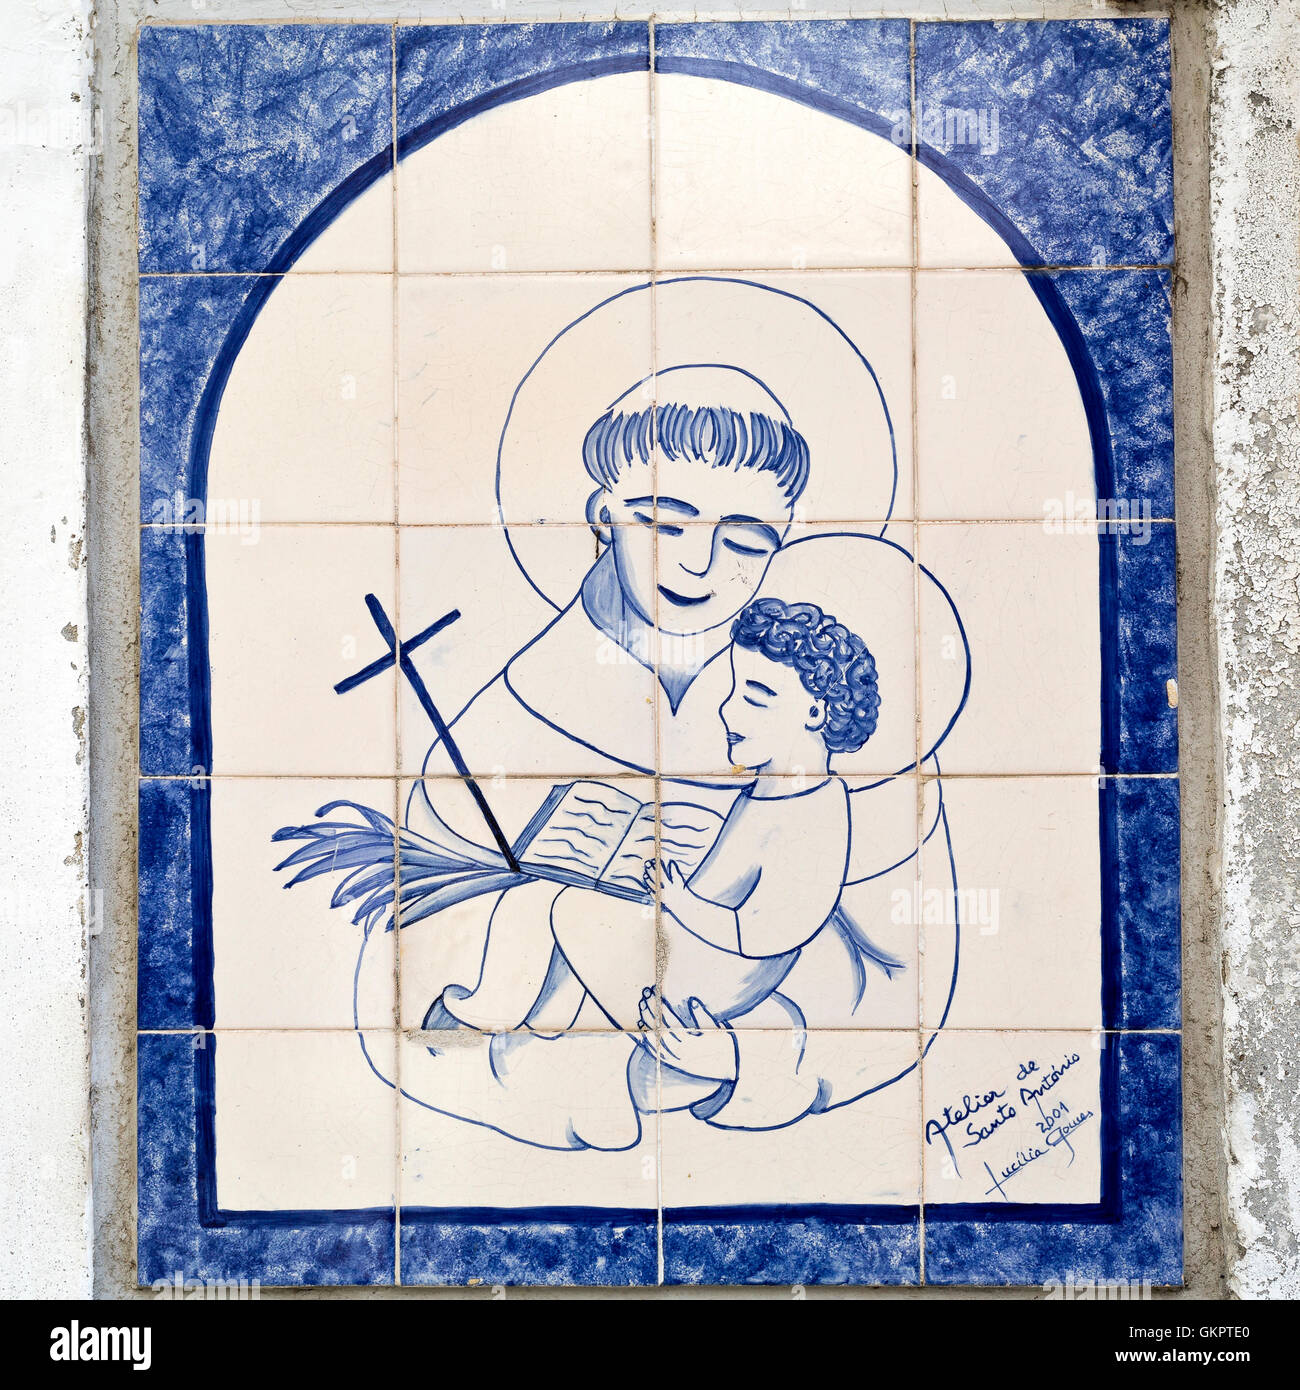 Panneaux de tuile à l'image Saint Antoine, le saint patron de Lisbonne, peuvent être trouvés dans les rues de Lisbonne, Portugal Banque D'Images